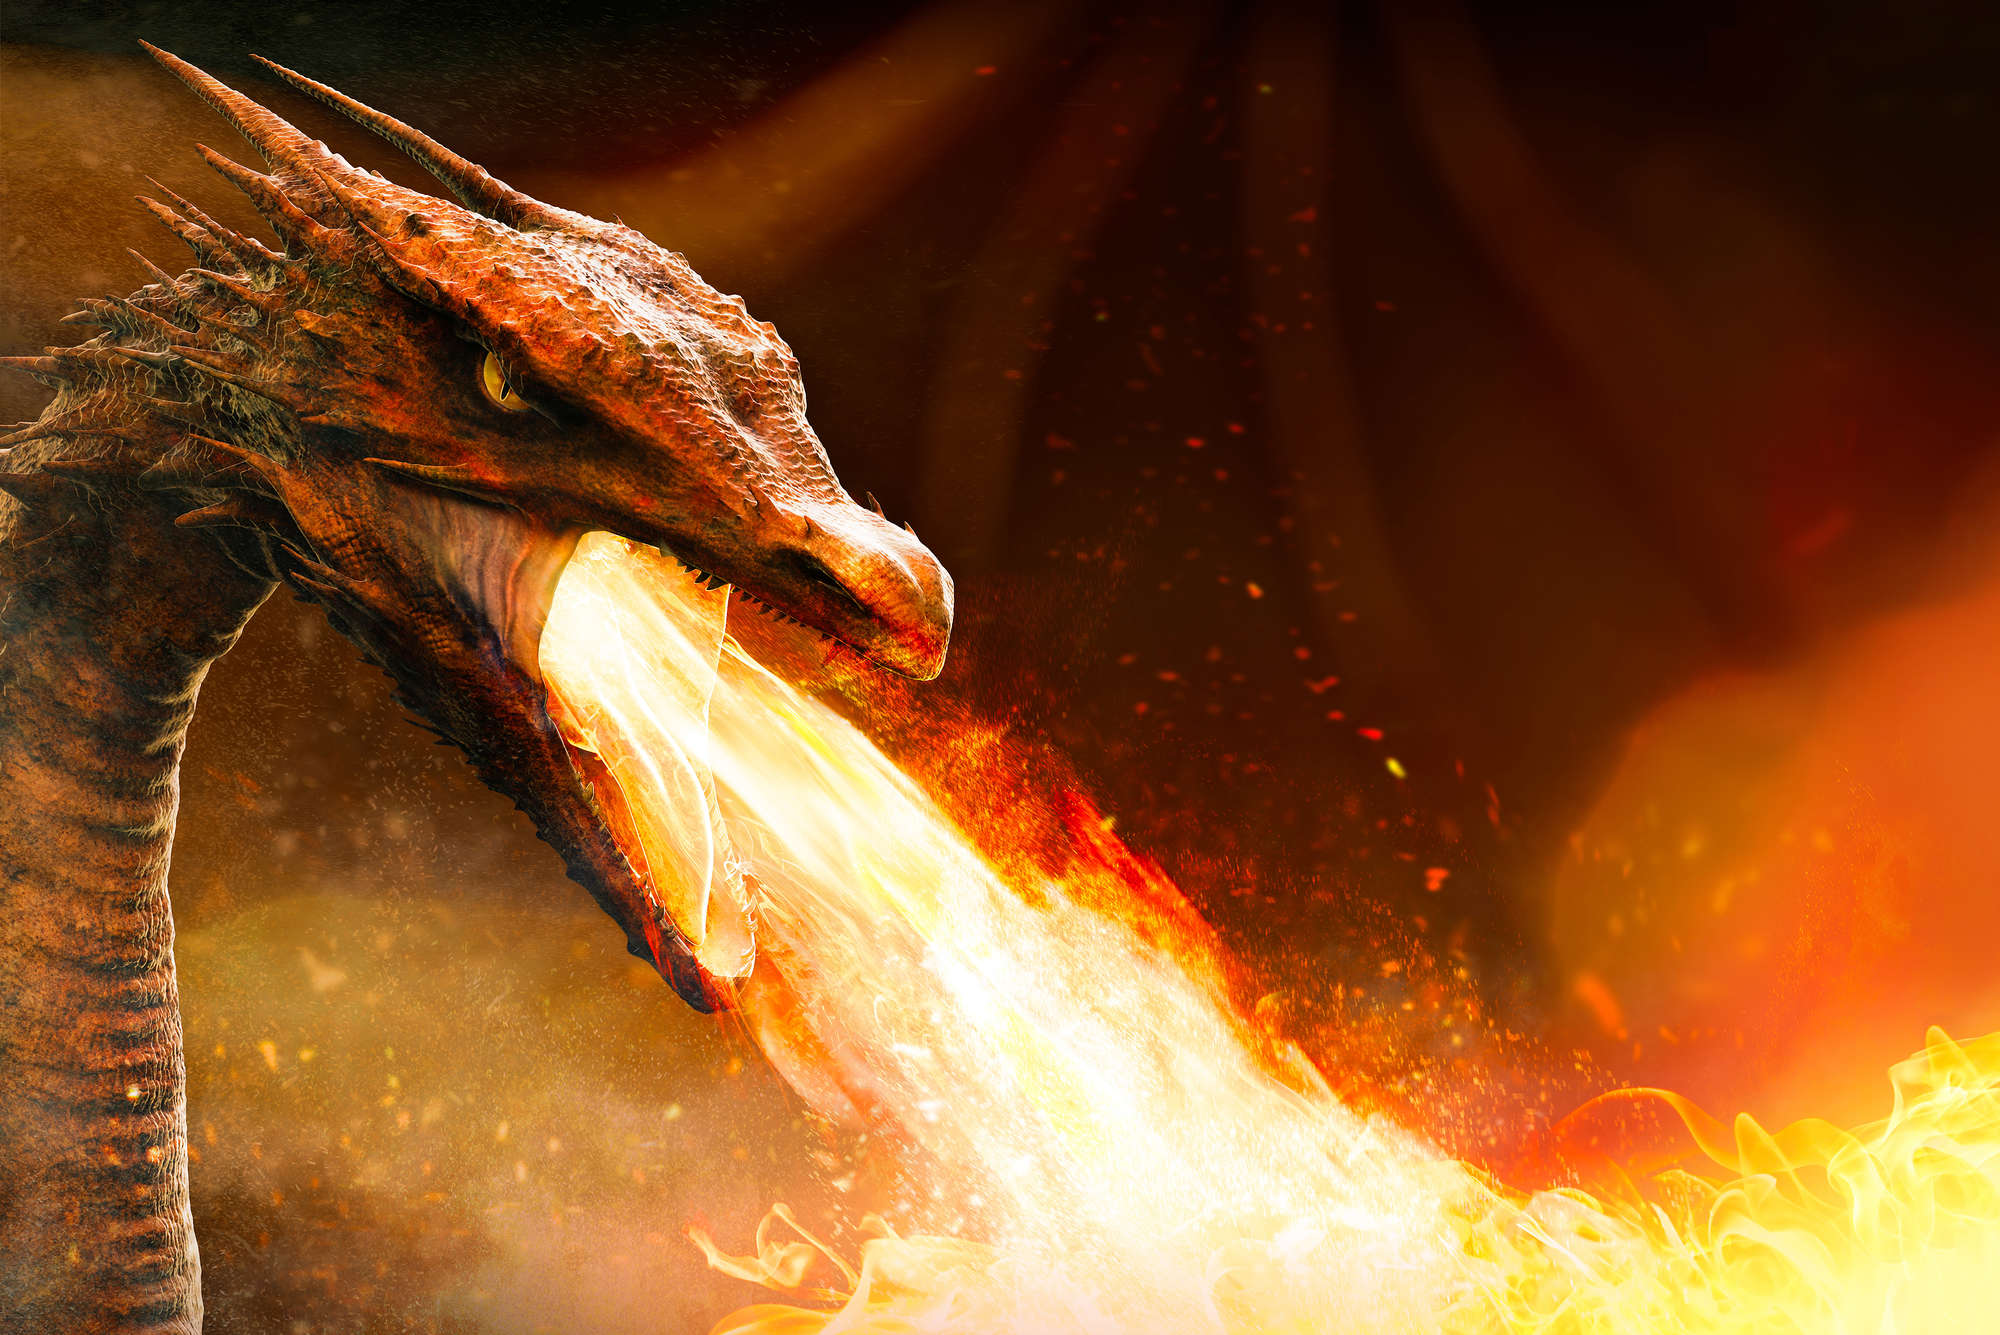             Papel pintado de fantasía dragón que escupe fuego sobre vinilo texturizado
        